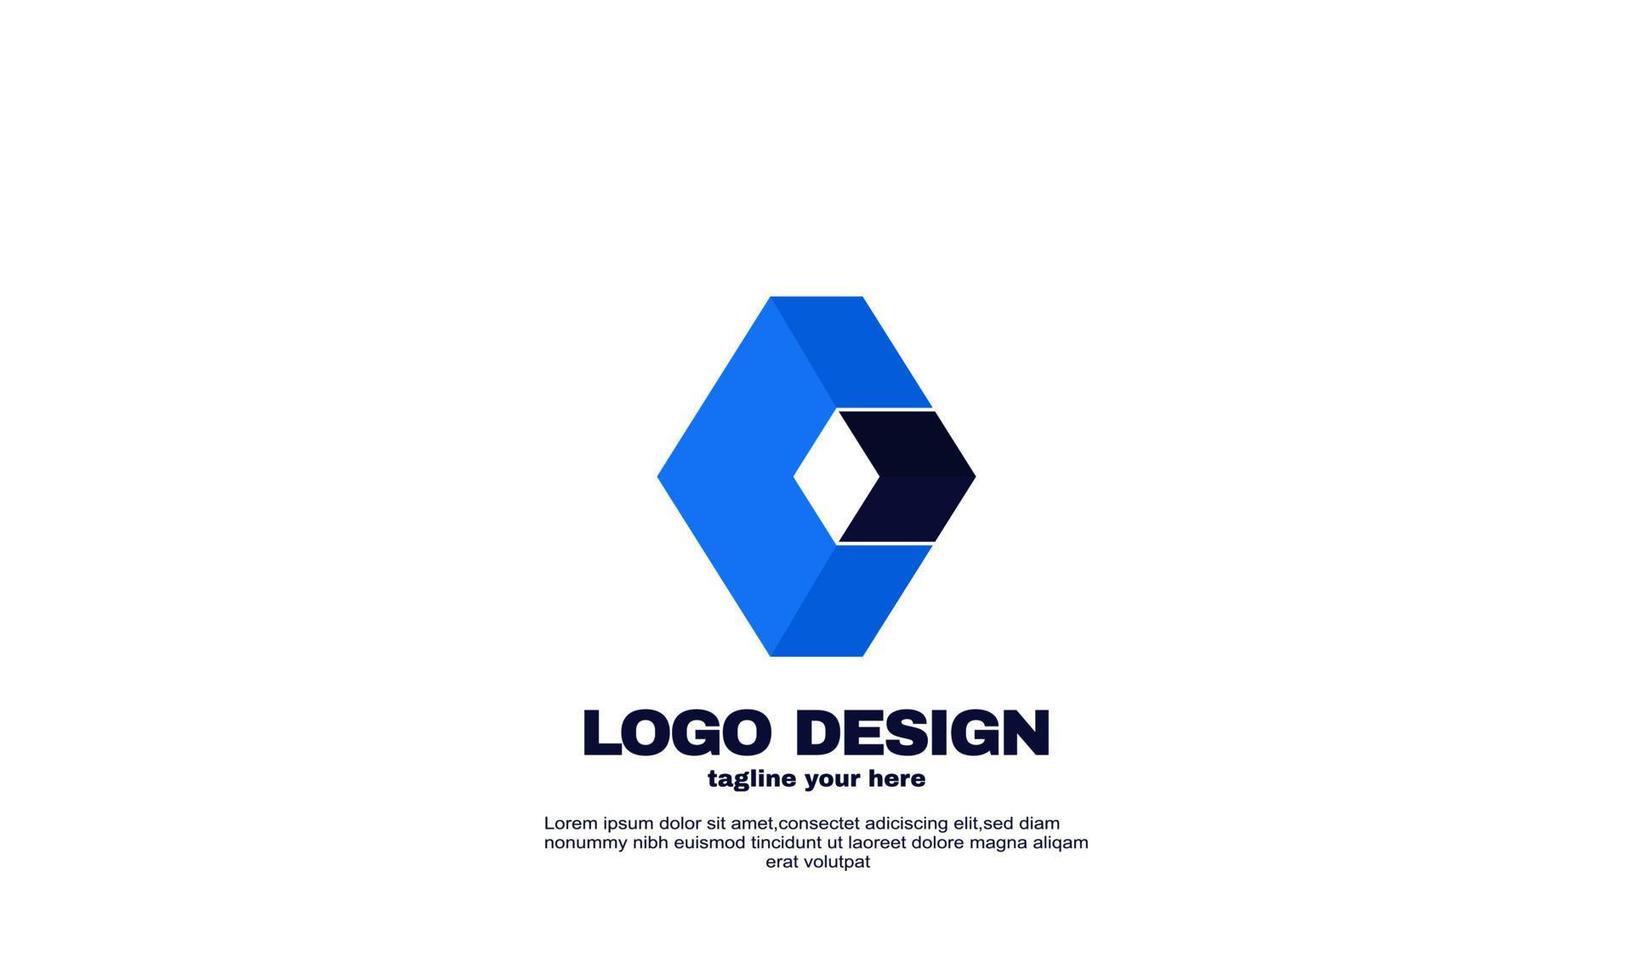 incrível ilustração criativa logotipo moderno empresa assinar vetor de desenho geométrico